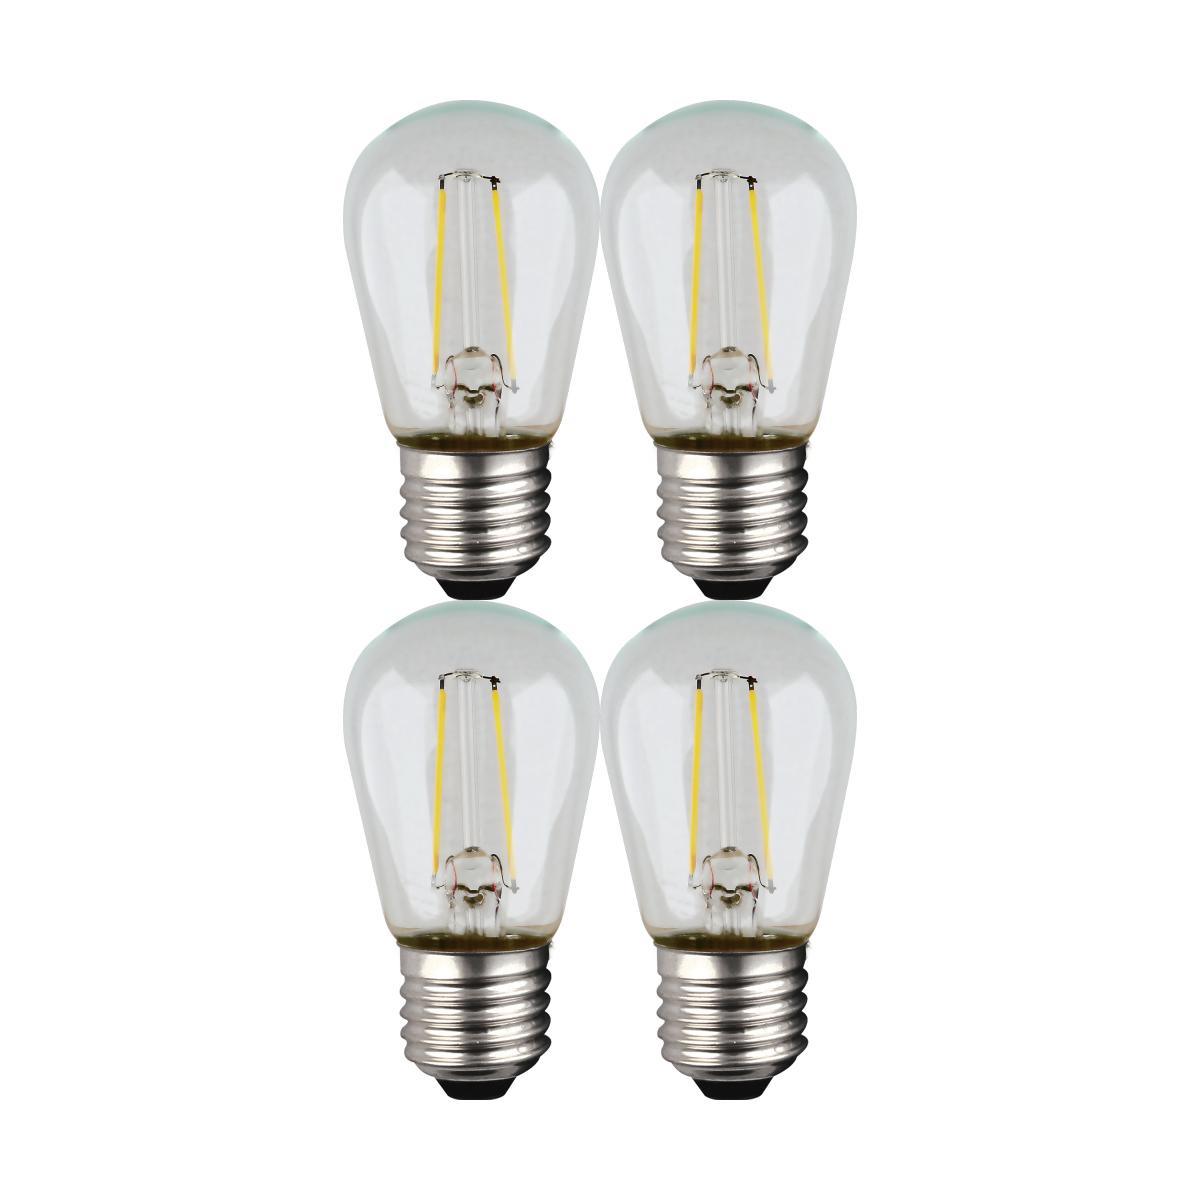 LED S14 Straight Tapered Bulb, 1 Watt, 100 Lumens, 2700K, E26 Medium Base, Clear Finish, Pack Of 4 - Bees Lighting